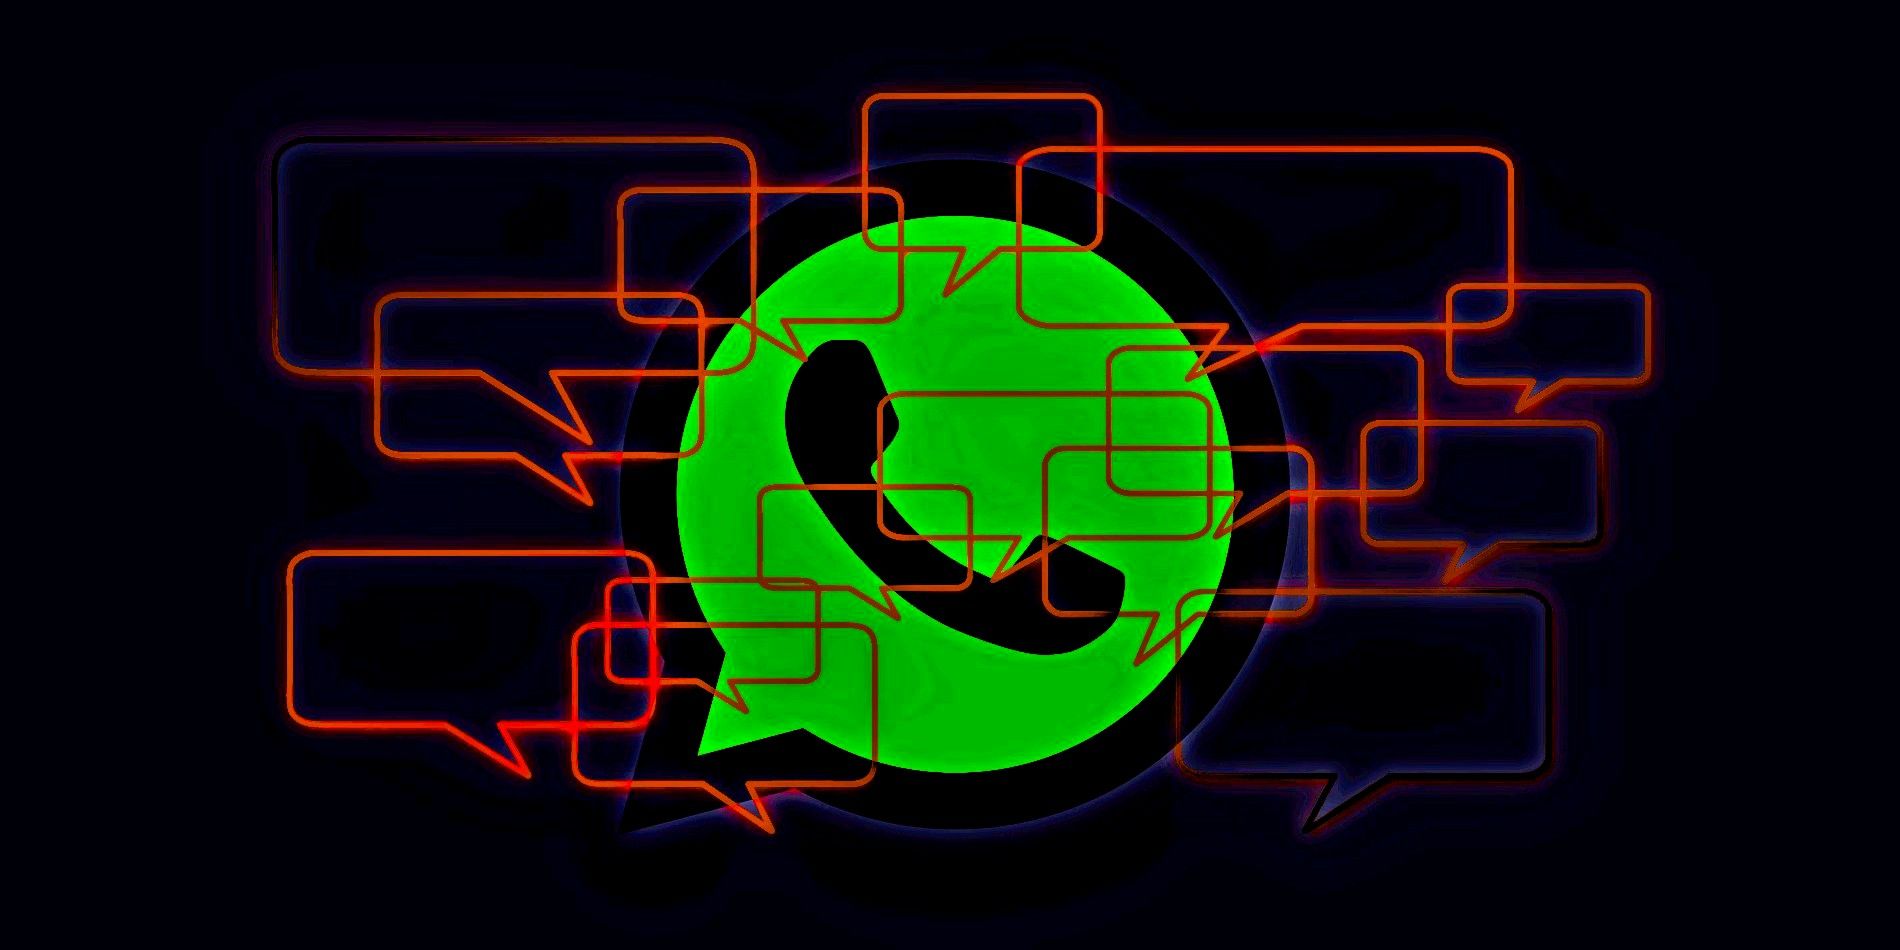 Las comunidades de WhatsApp permitirán a los administradores administrar grupos de manera más conveniente